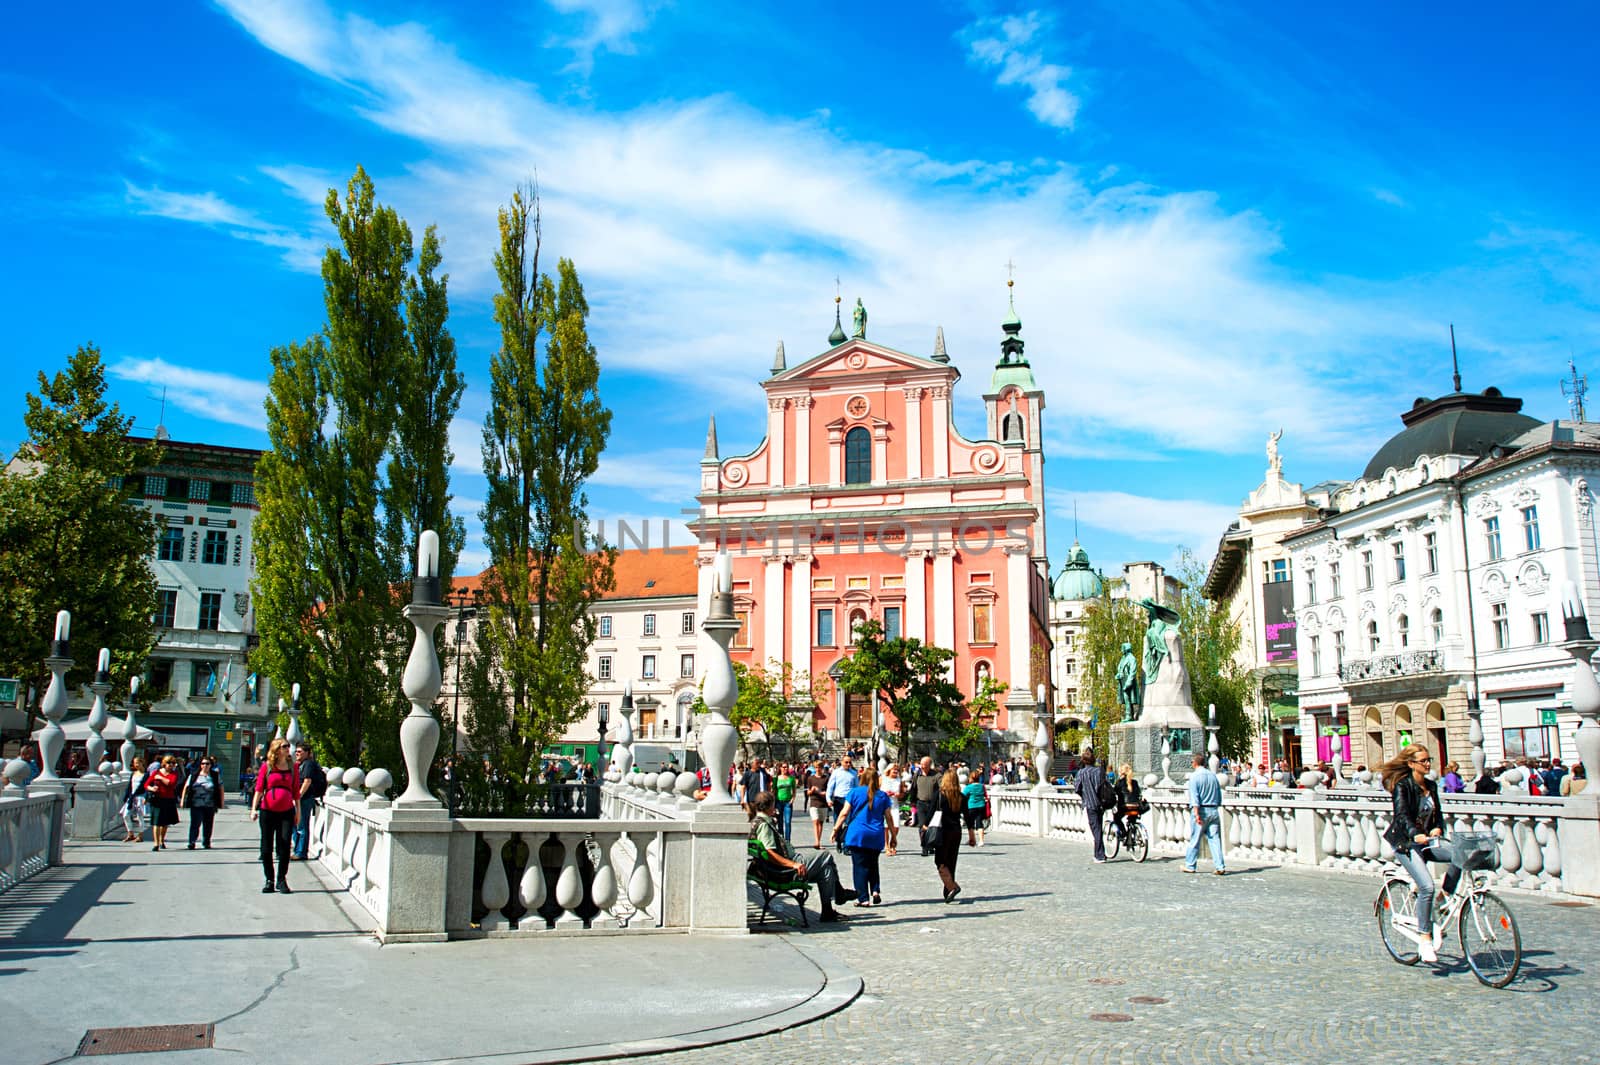 Ljubljana Preseren Square by joyfull